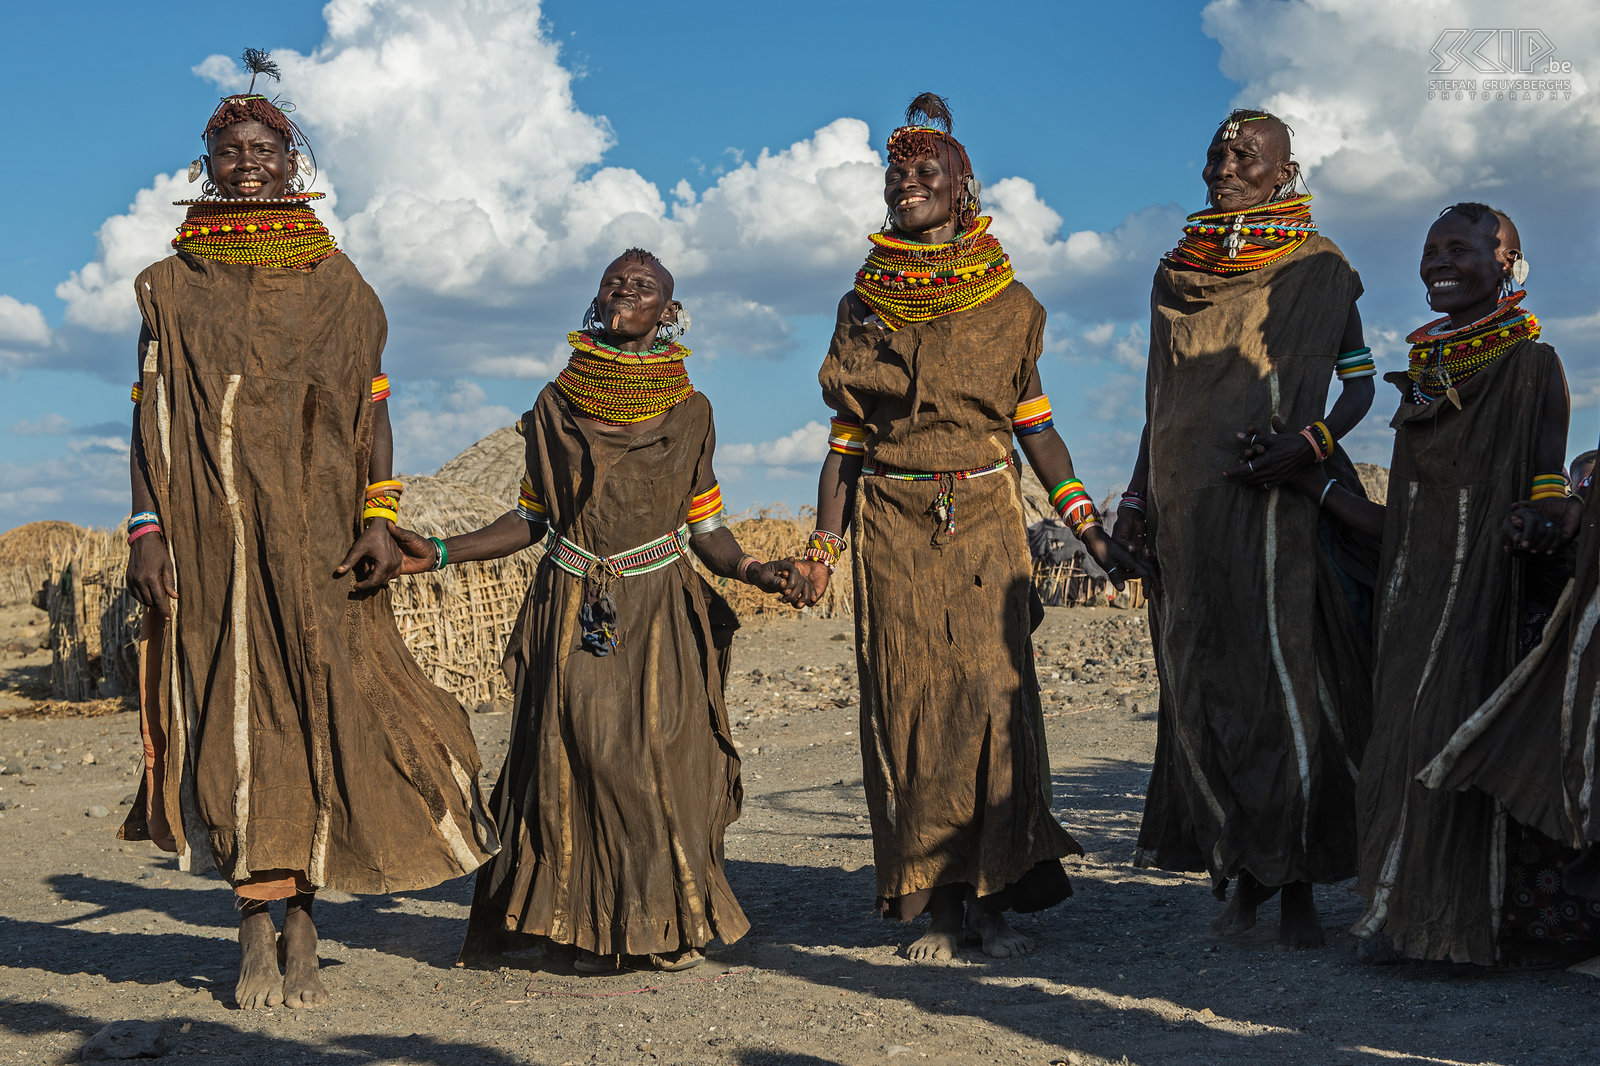 Lake Turkana - Dansende Turkana vrouwen Enkele Turkana vrouwen trokken hun kleed gemaakt van koeien of geitenleer aan en demonstreren enkele tribale dansen. Stefan Cruysberghs